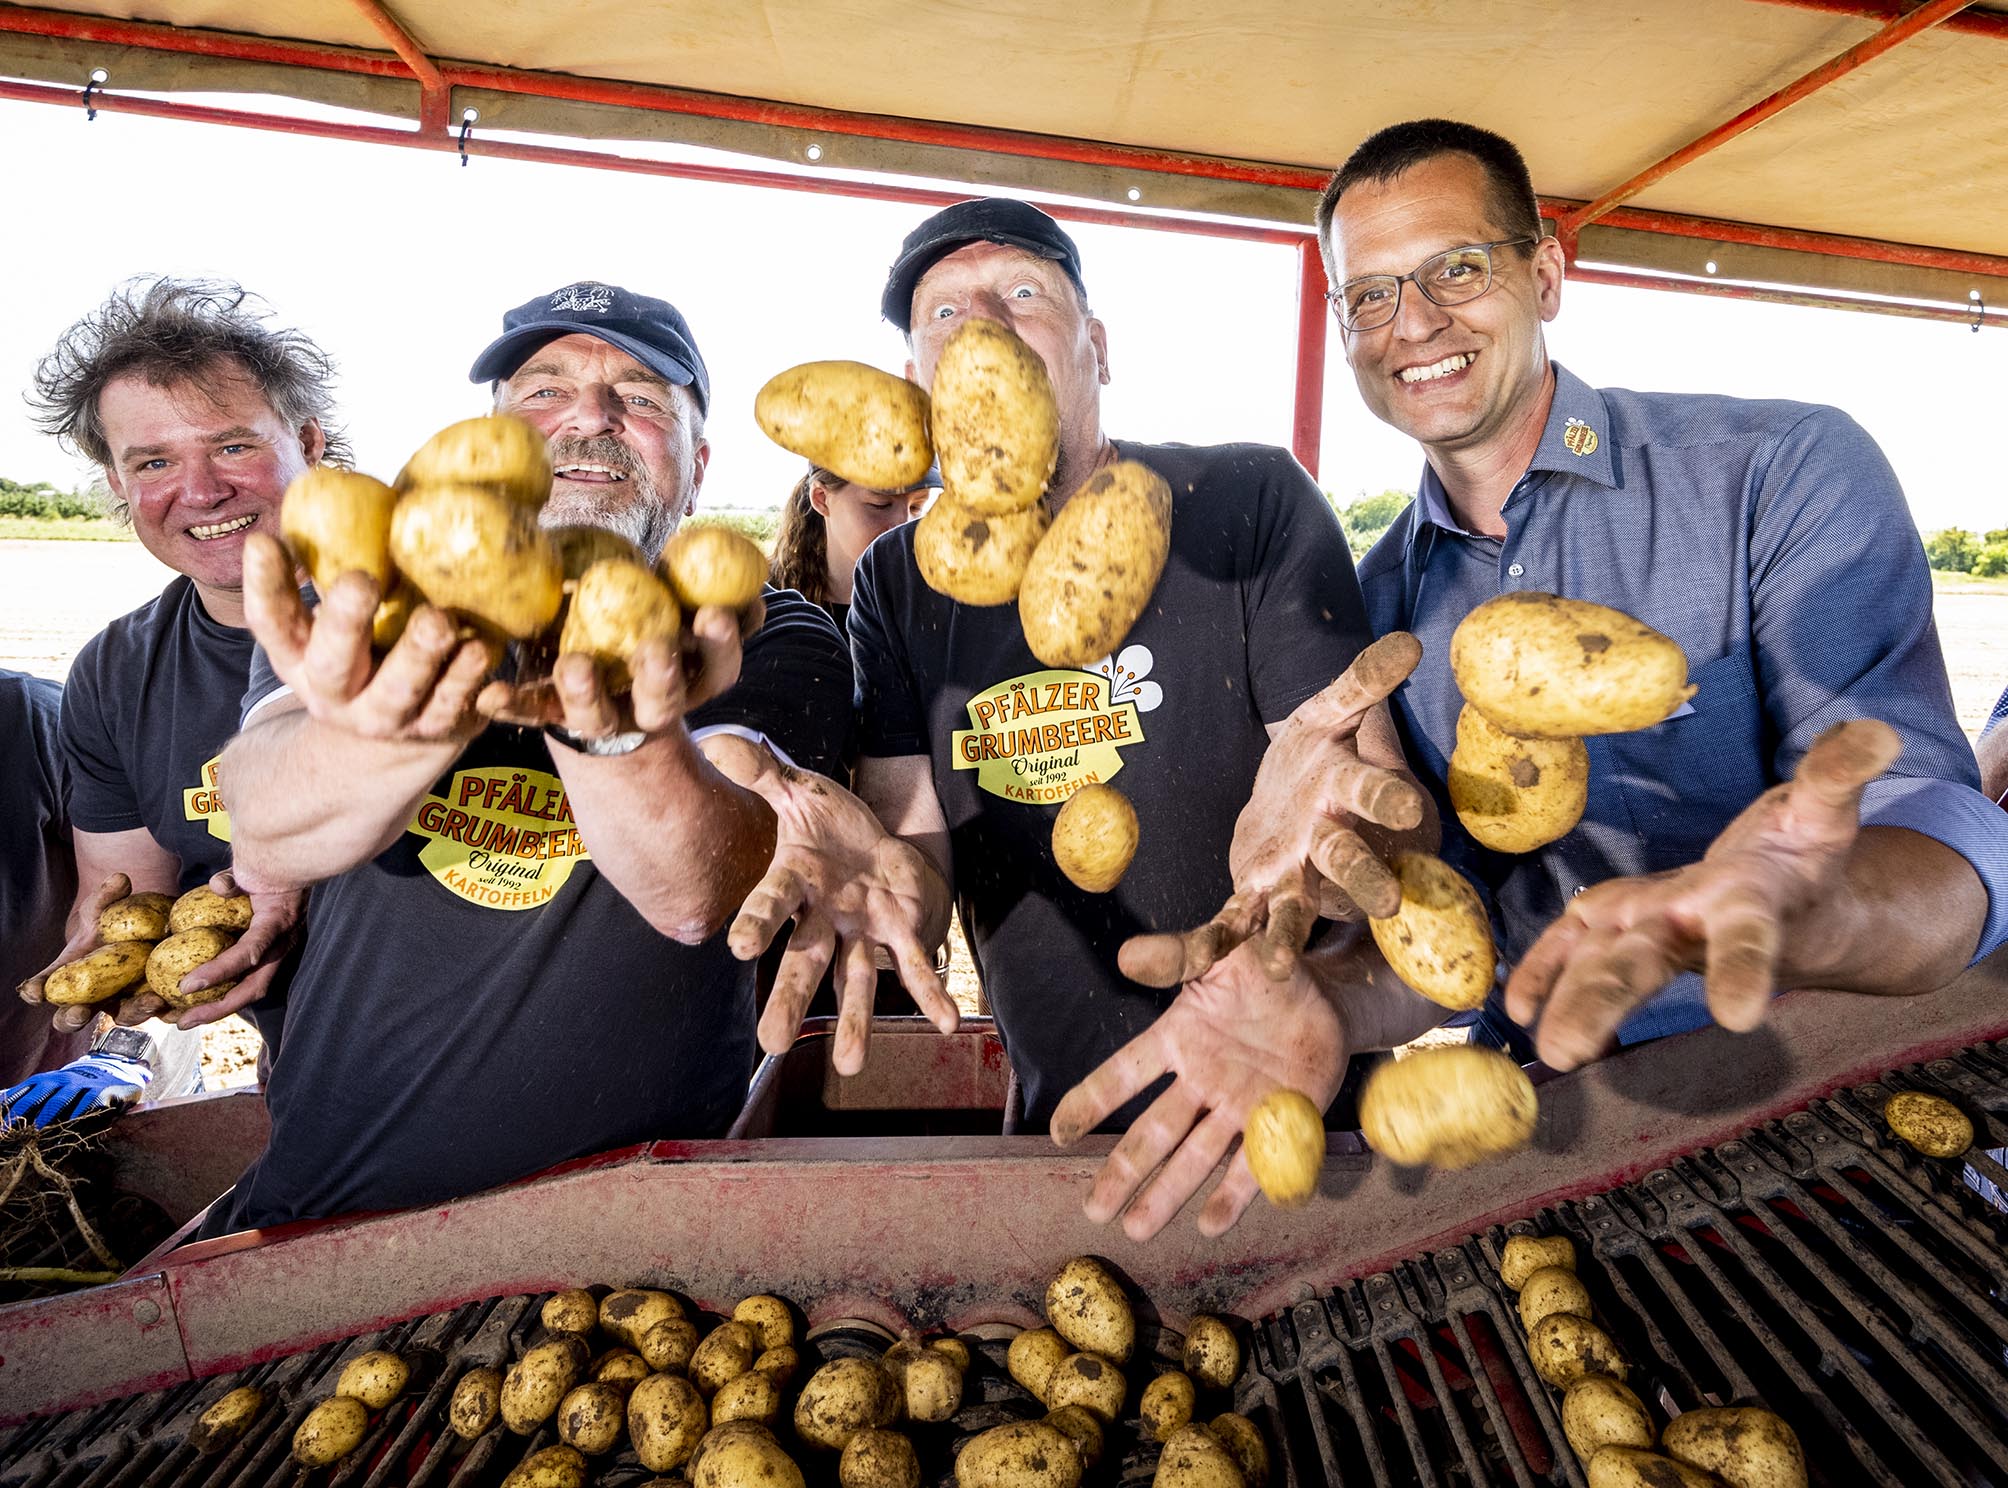 Sänger Edsel und Schlagzeuger Stefan Brod werfen mit dem Vorsitzenden der Erzeugergemeinschaft Hartmut Magin auf der Erntemaschine sitzend Kartoffeln in die Kamera